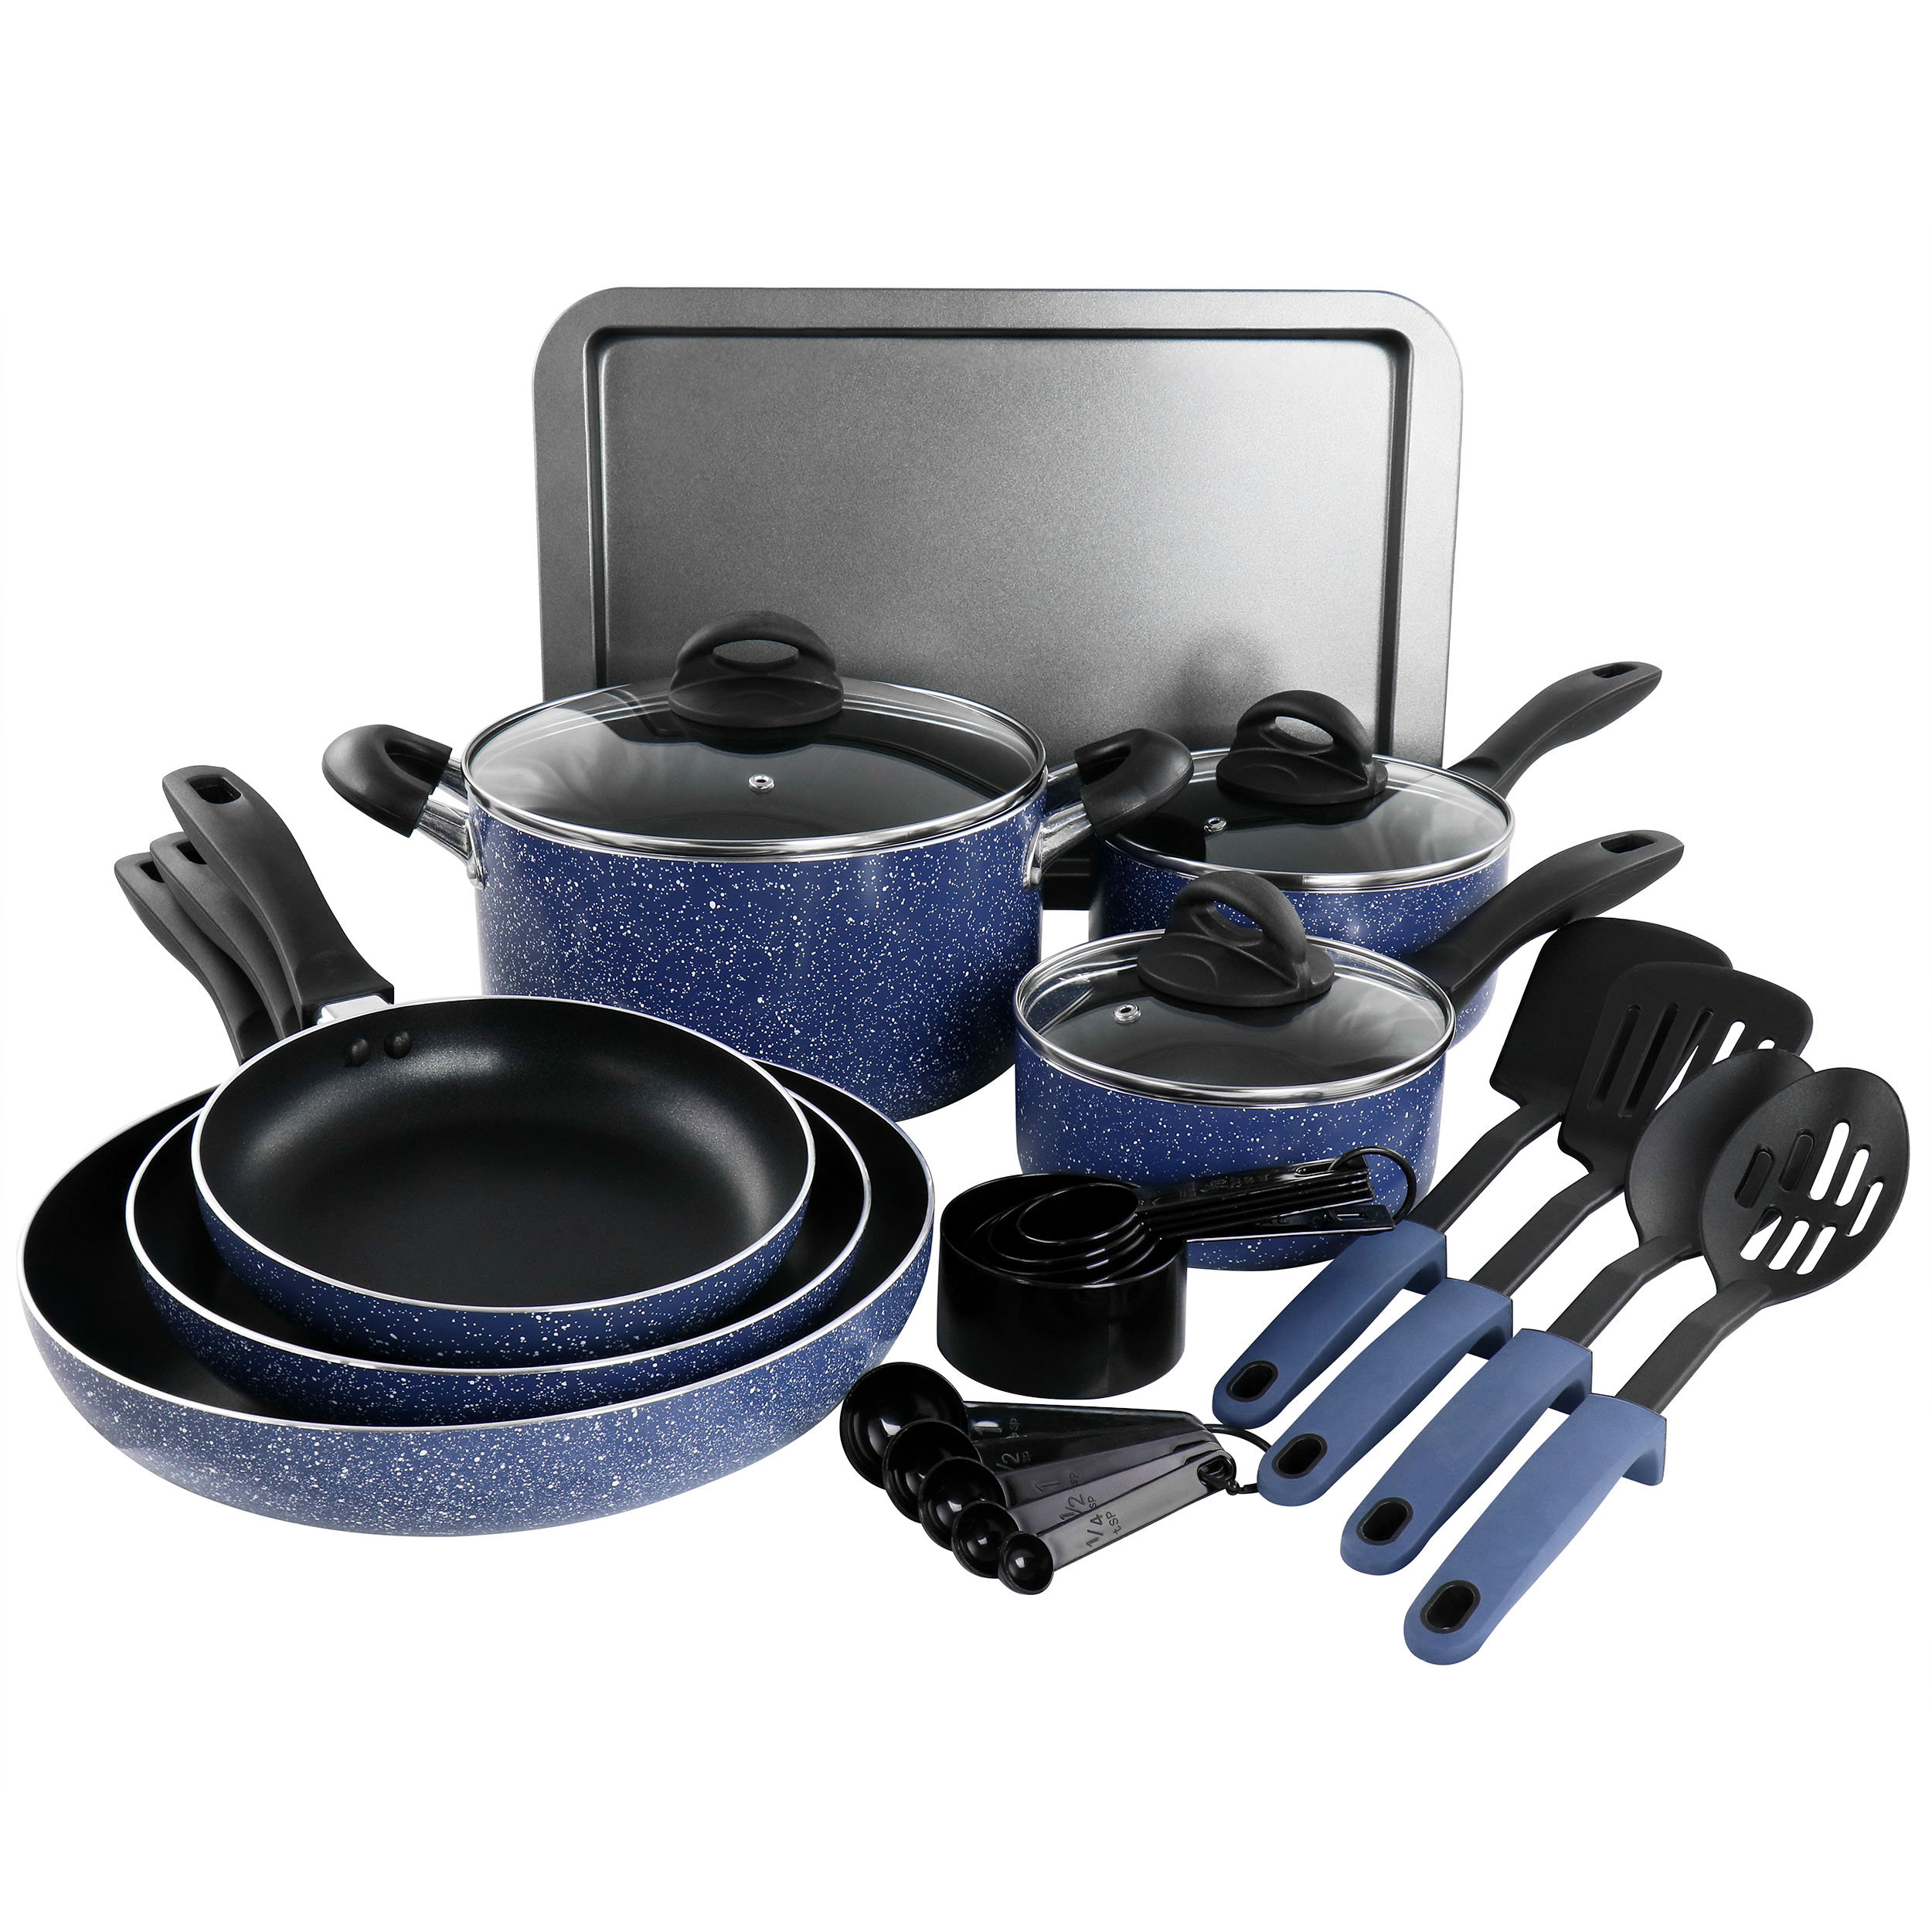 https://assets.wfcdn.com/im/78230152/compr-r85/2413/241393710/24-piece-non-stick-stainless-steel-1810-cookware-set.jpg